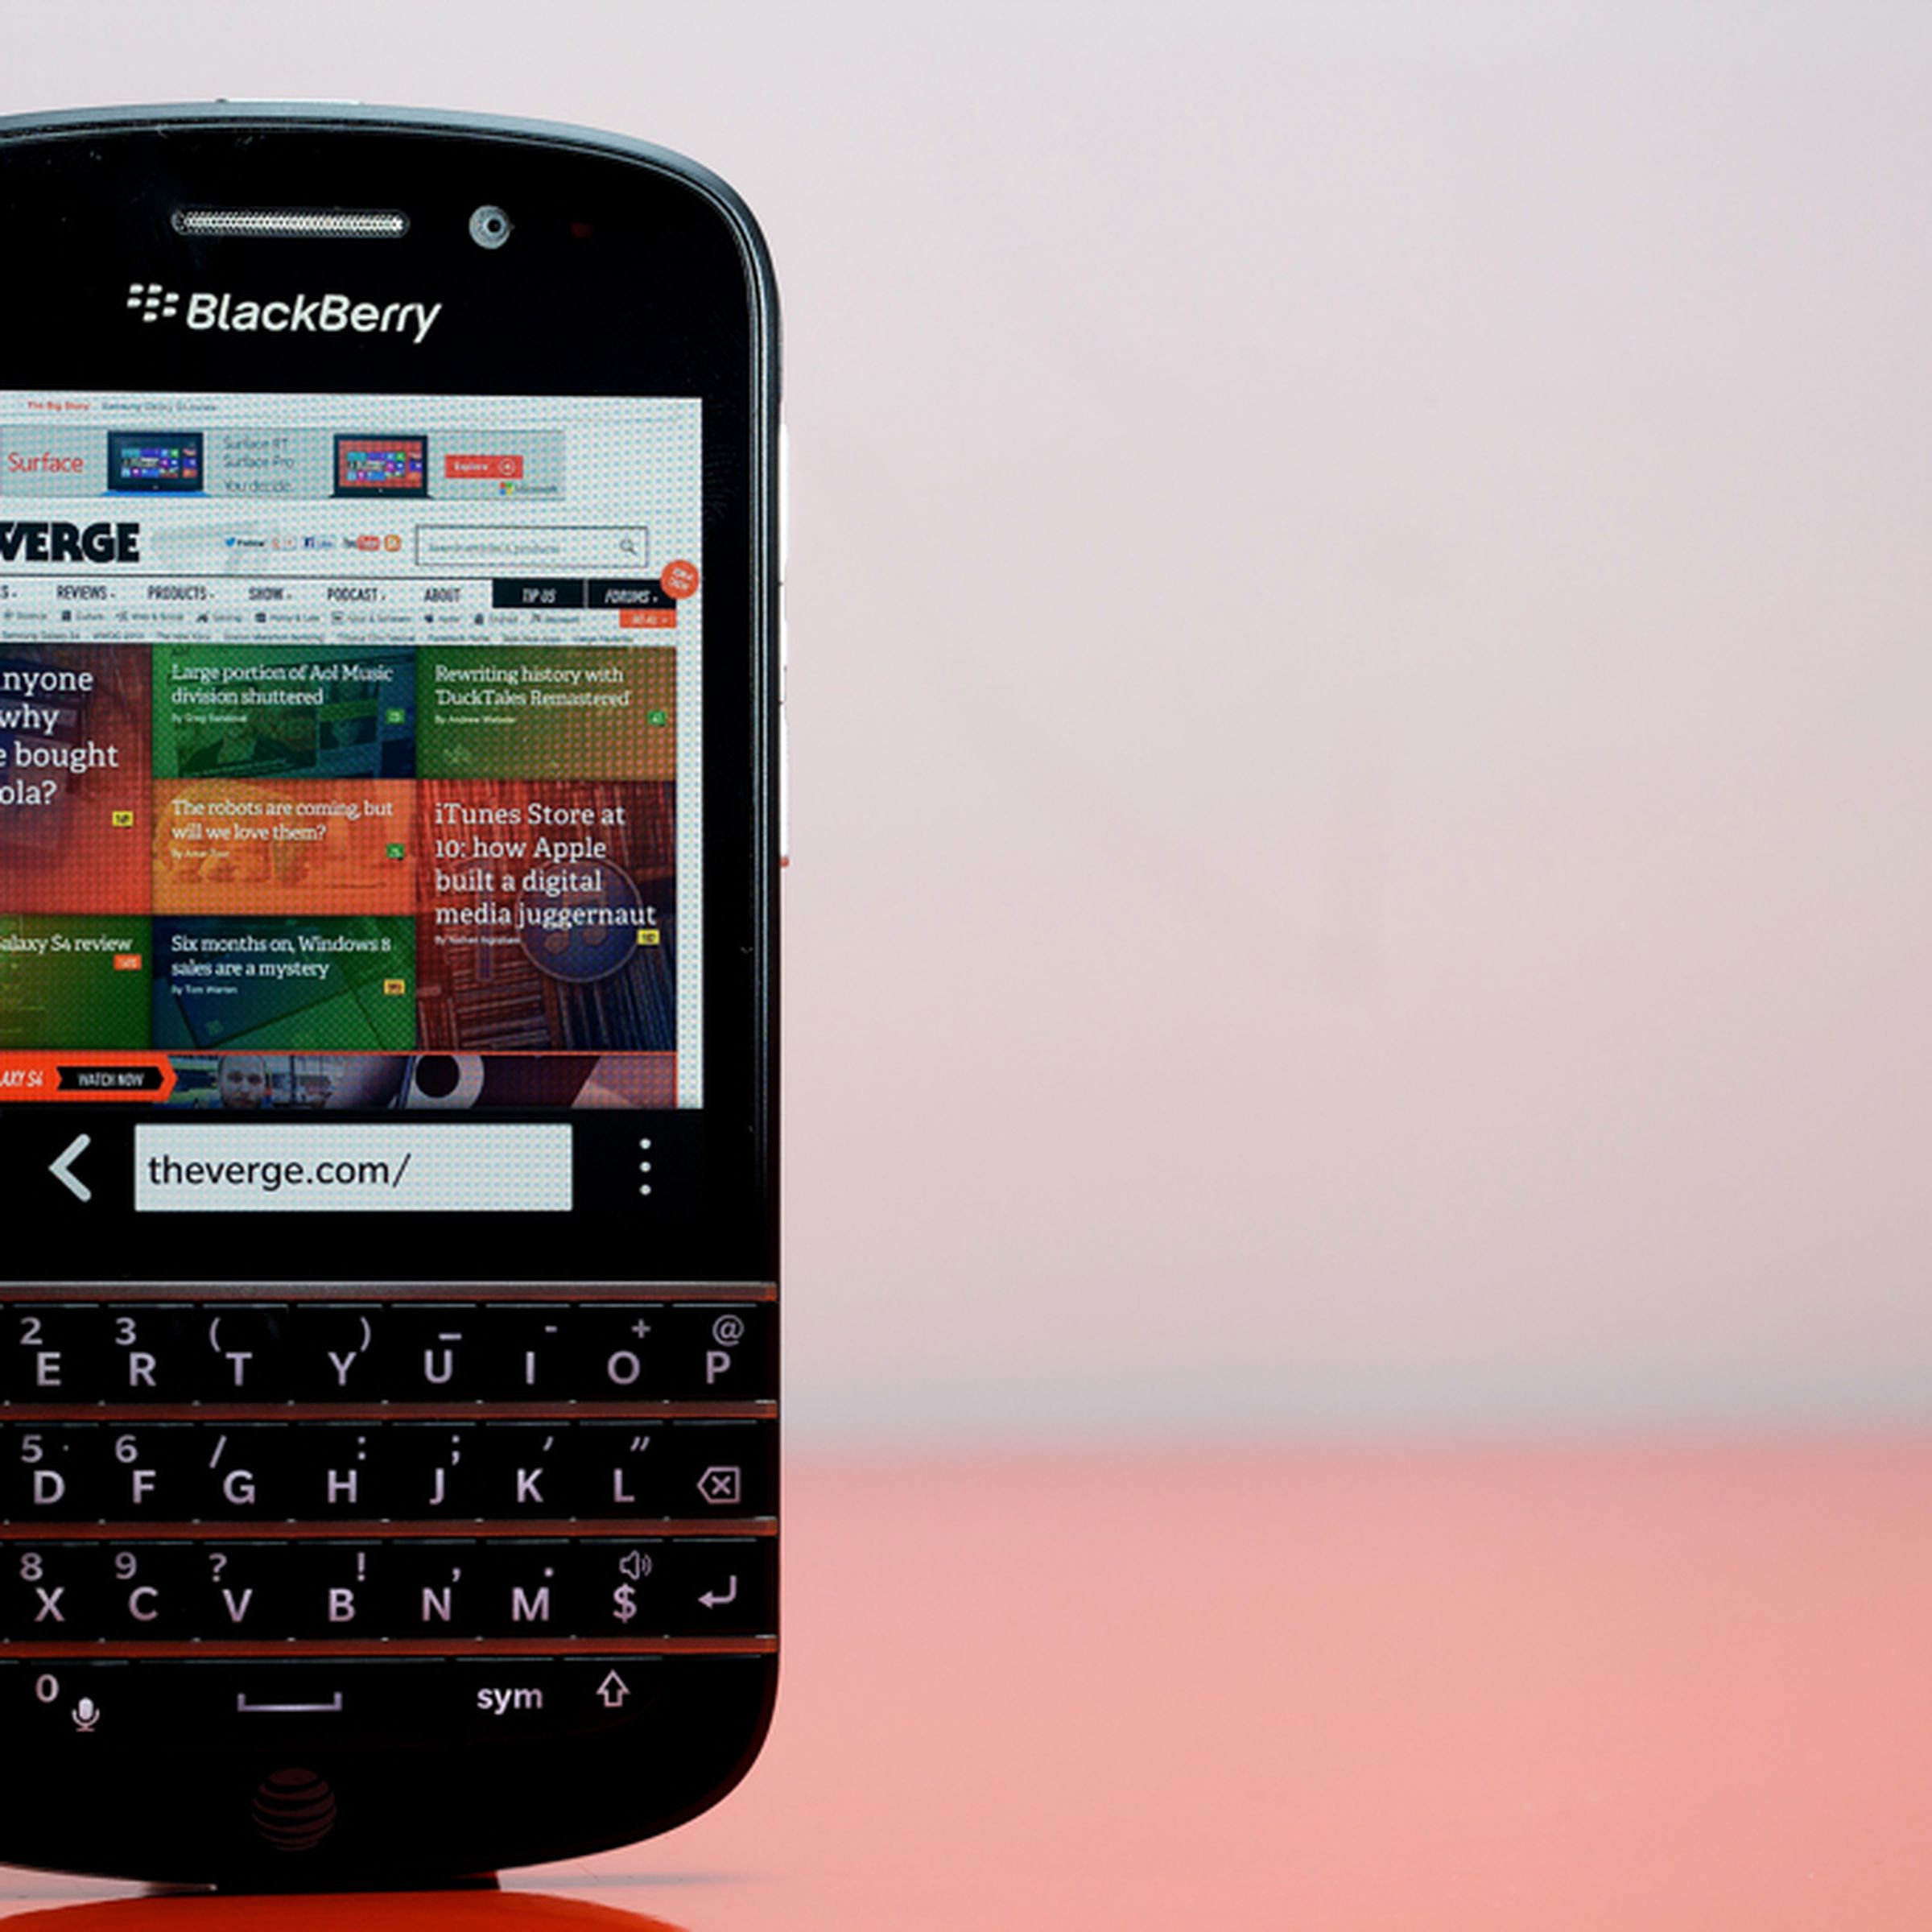 BlackBerry Q10 hero (1024px)